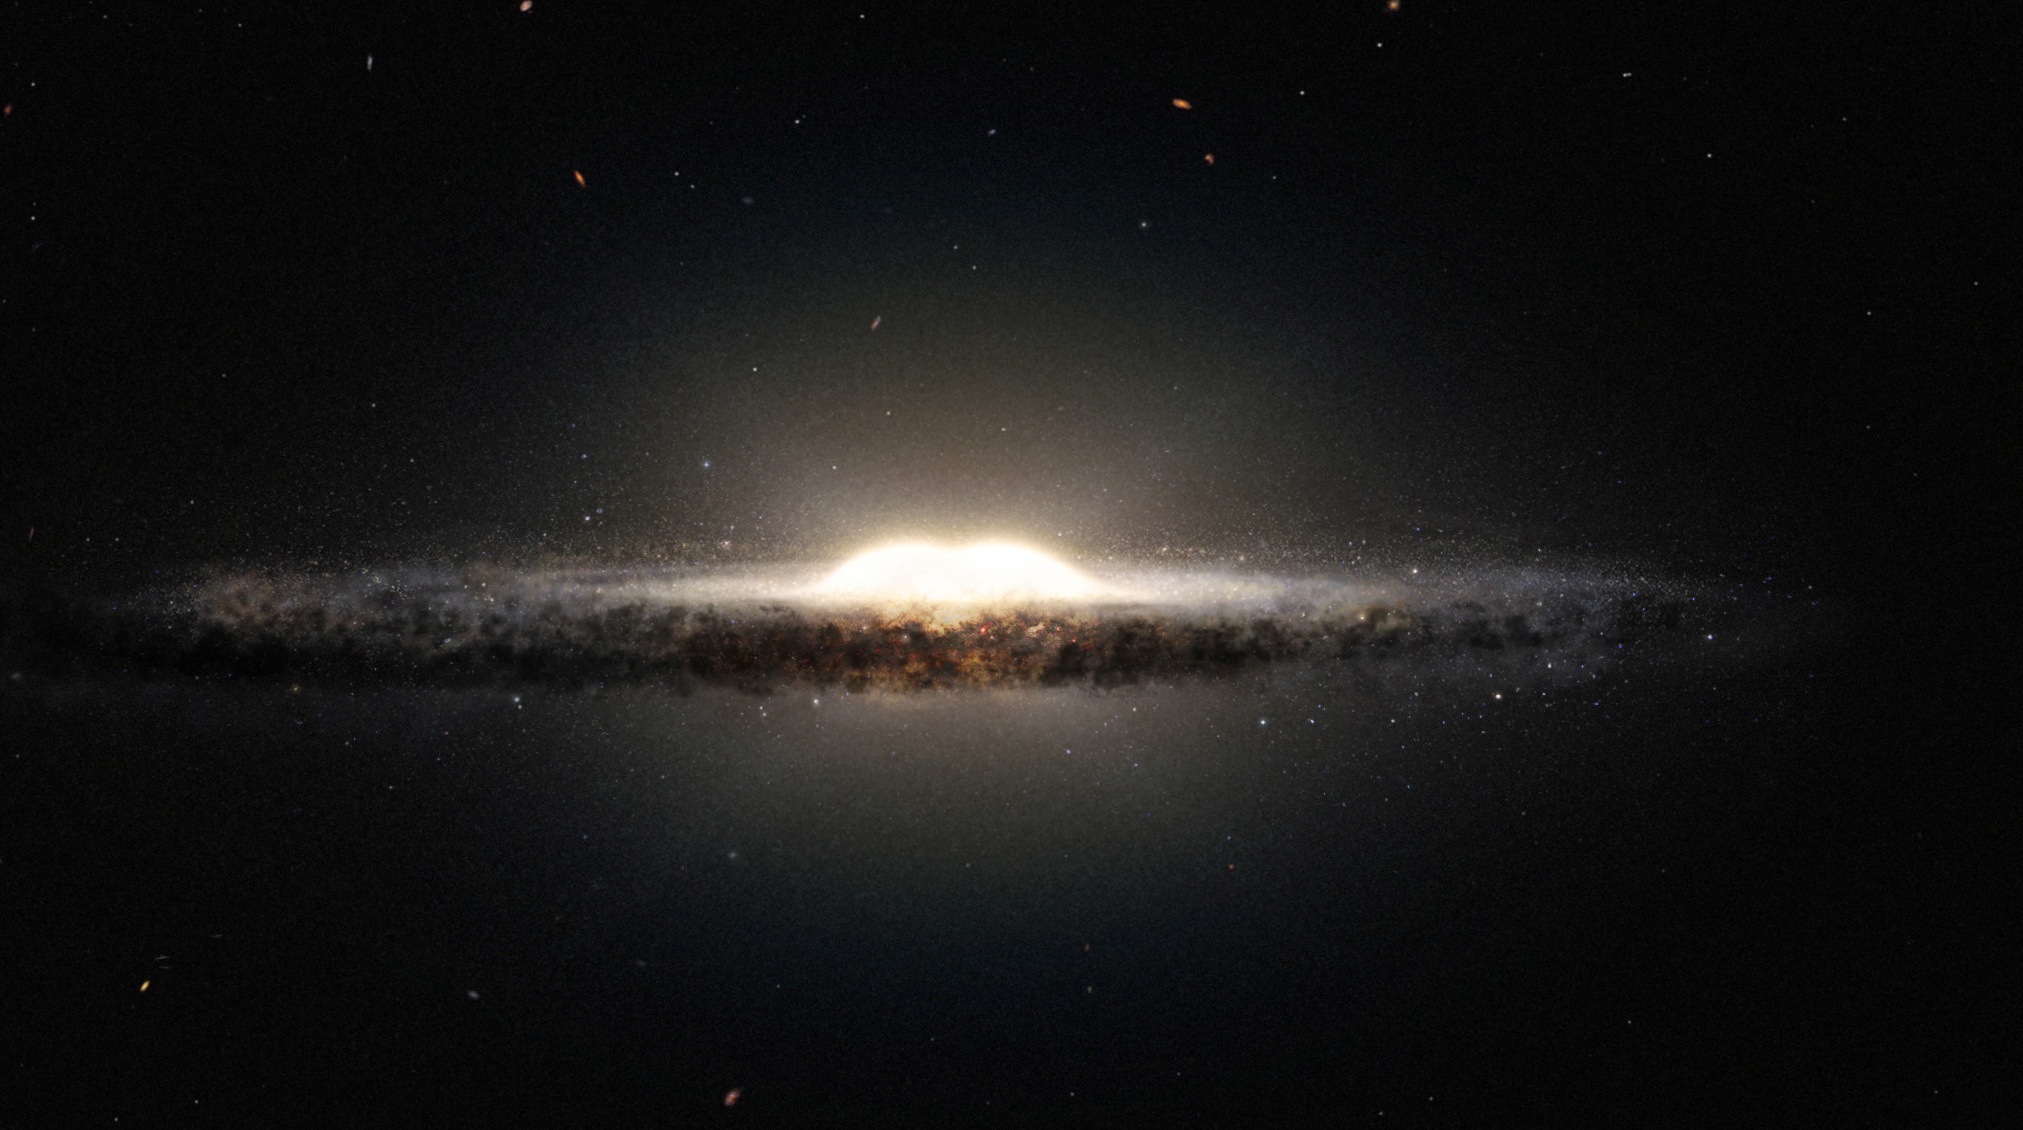 Cette vue d'artiste montre ce à quoi notre galaxie, la Voie lactée, ressemblerait, si nous l'observions depuis le dessus et sous un autre angle que celui sous lequel nous l'apercevons depuis la Terre. Le bulbe central apparaît sous la forme d'une cacahuète constituée d'étoiles rougeoyantes et les bras spiraux ainsi que les nuages de poussière associés forment une bande étroite. © Eso/Nasa/JPL-Caltech/M. Kornmesser/R. Hurt